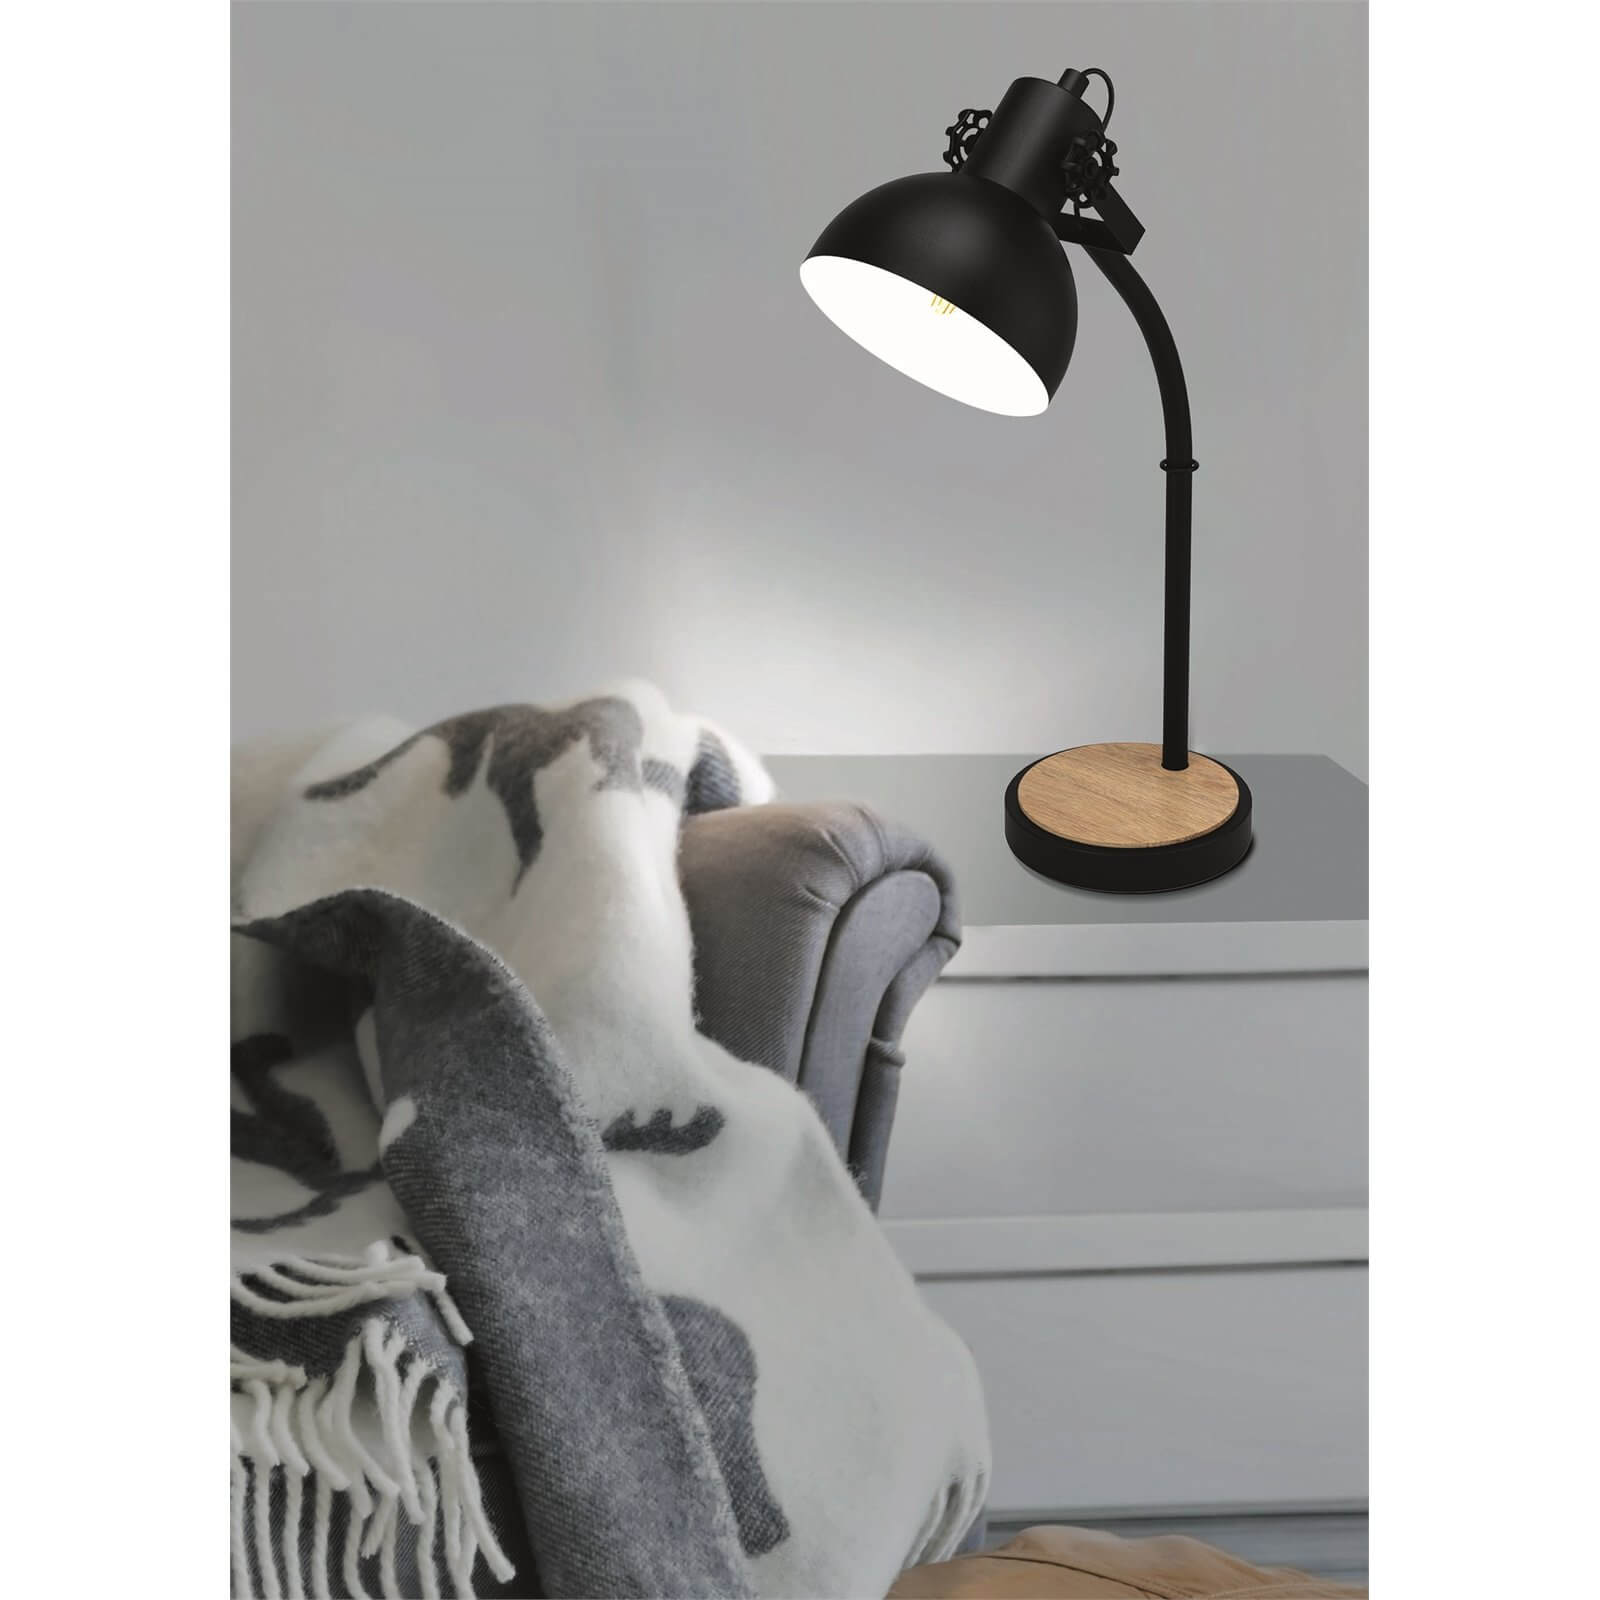 EGLO Lubenham Stylish Black and Wood Table Lamp